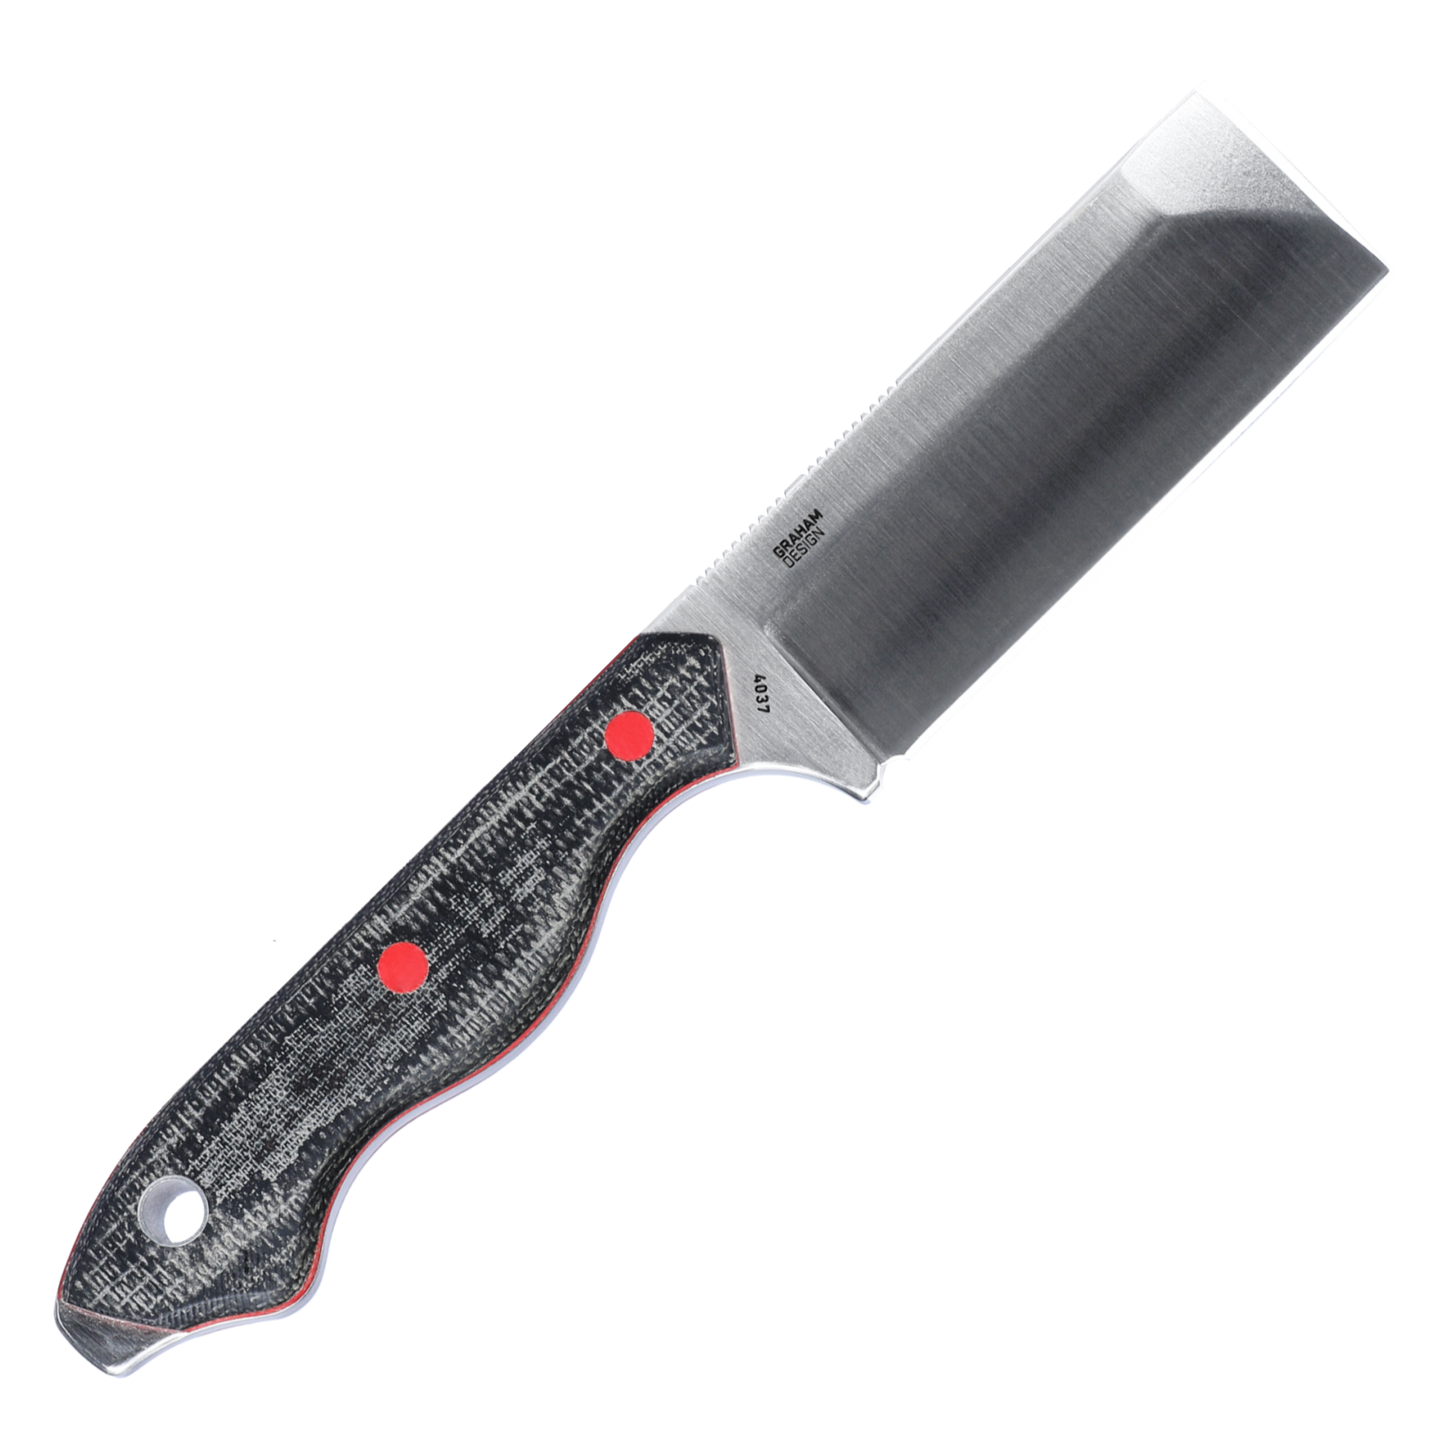 CRKT Razel 2.97" D2 Fixed Blade Knife - John Graham Design - 4037